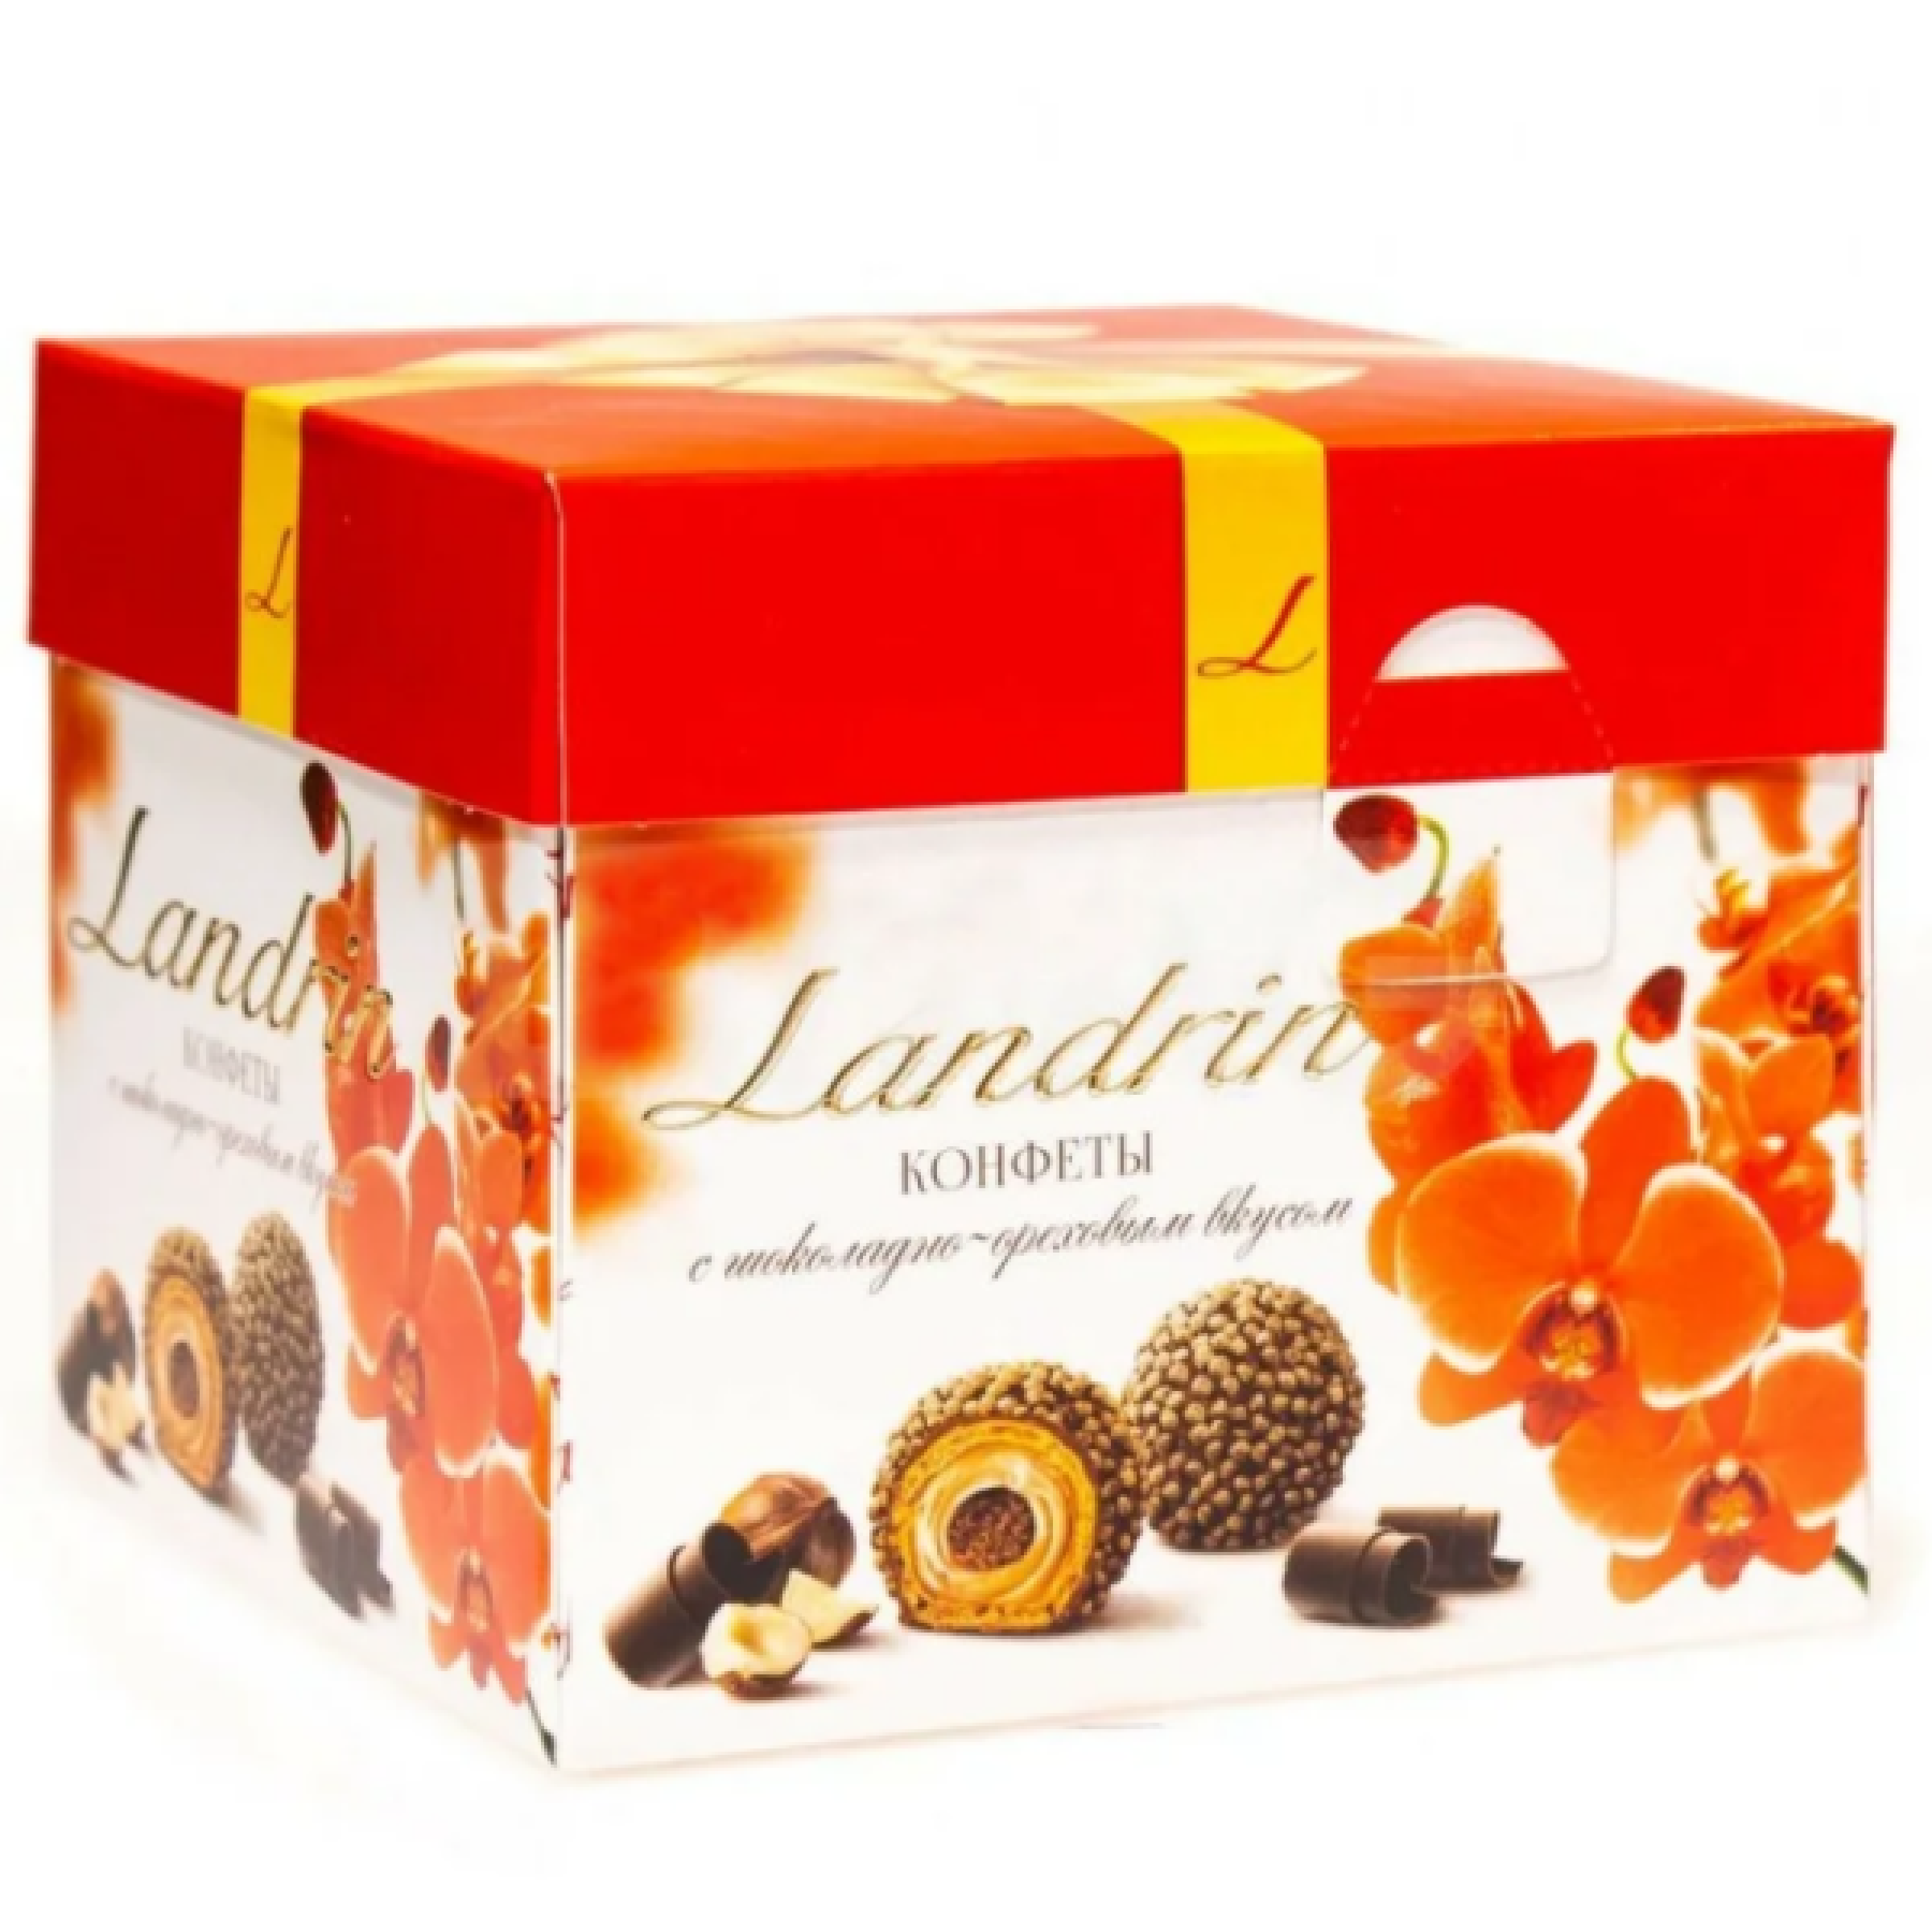 Набор конфет Landrin с шоколадно-ореховым вкусом, 120 г